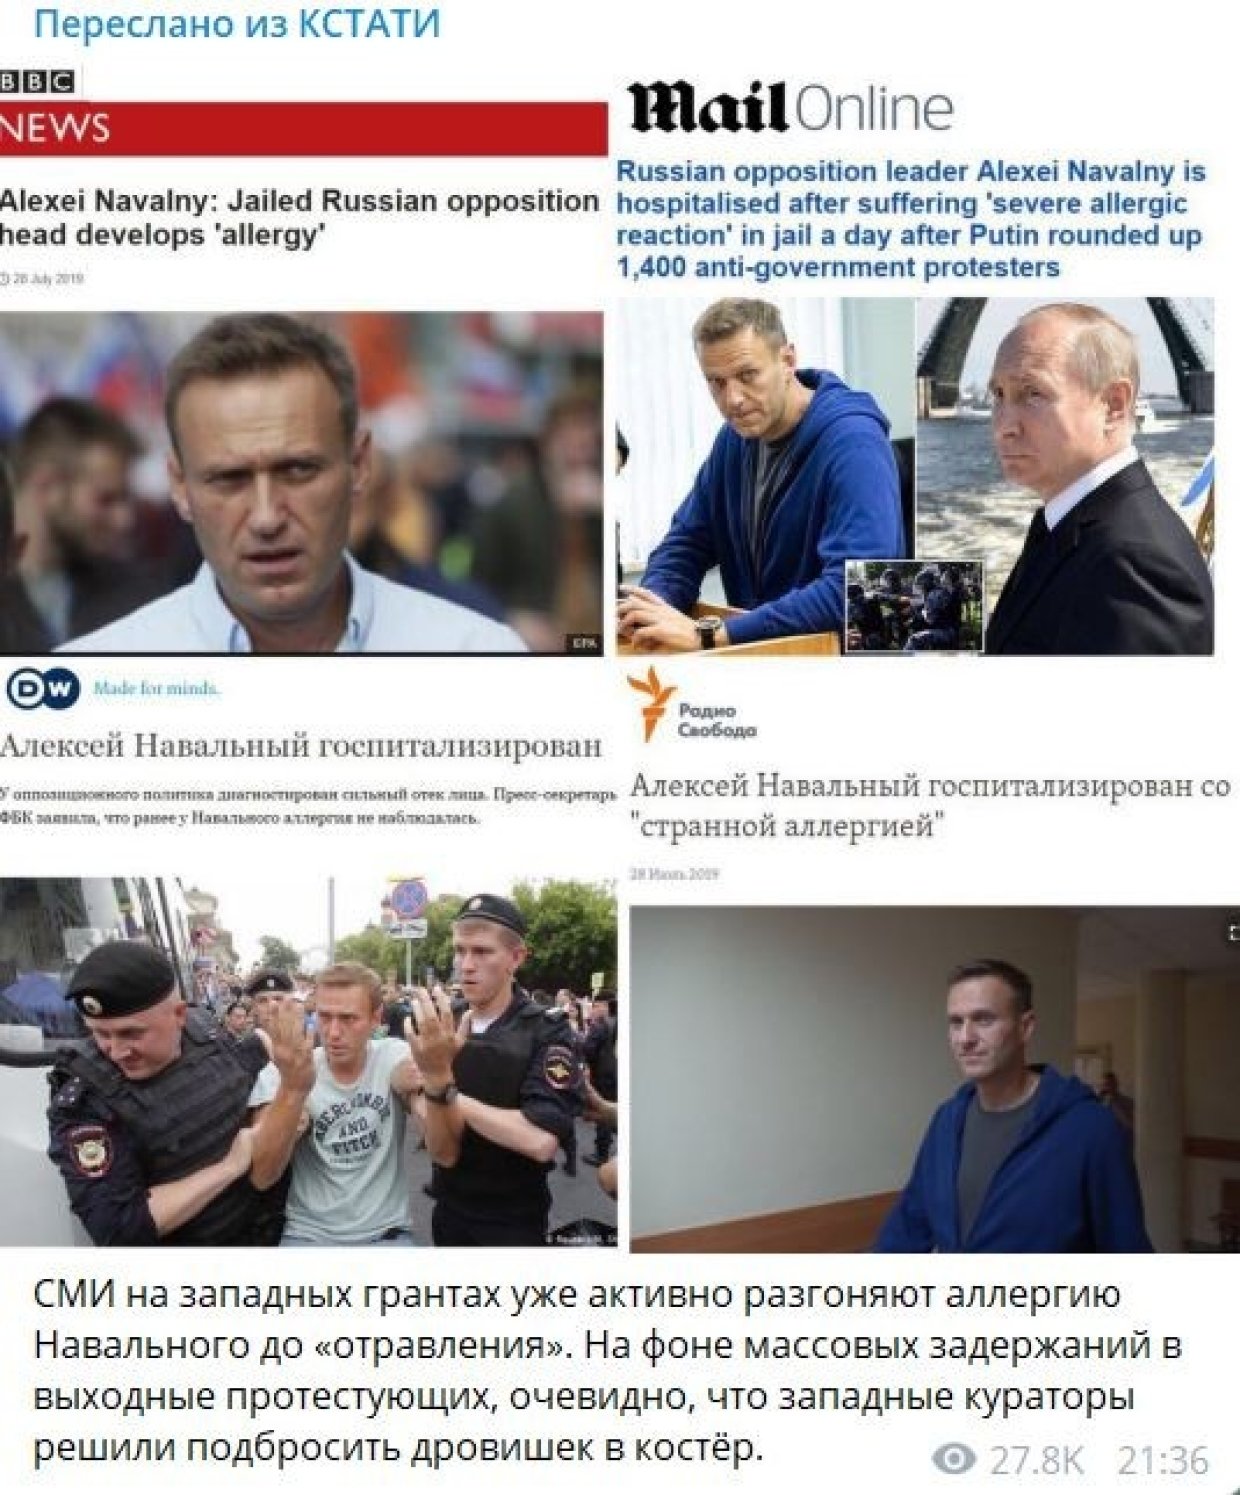 «Дождь» наряду со многими прозападными и западными СМИ активно распространяет предположения и слухи, активно участвуя в медийной истерике вокруг самочувствия Алексея Навального